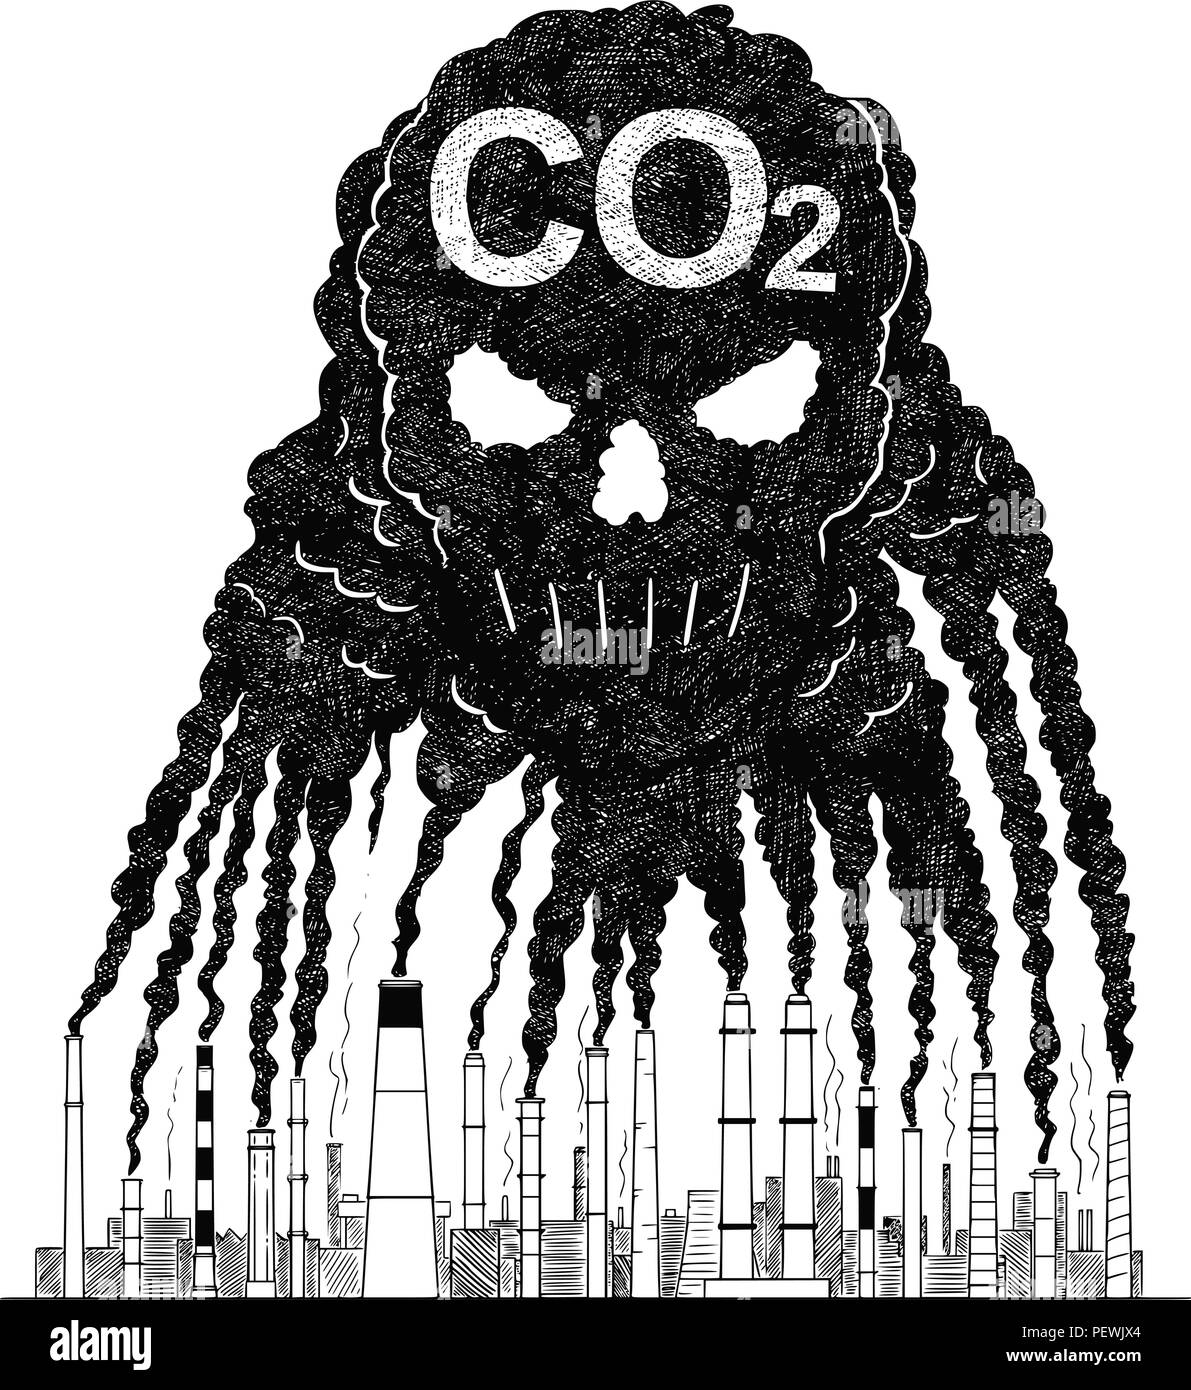 Vettore di disegno artistico illustrazione di fumo dalla fornace Creazione di cranio umano, concetto di CO2 dell'inquinamento atmosferico Illustrazione Vettoriale